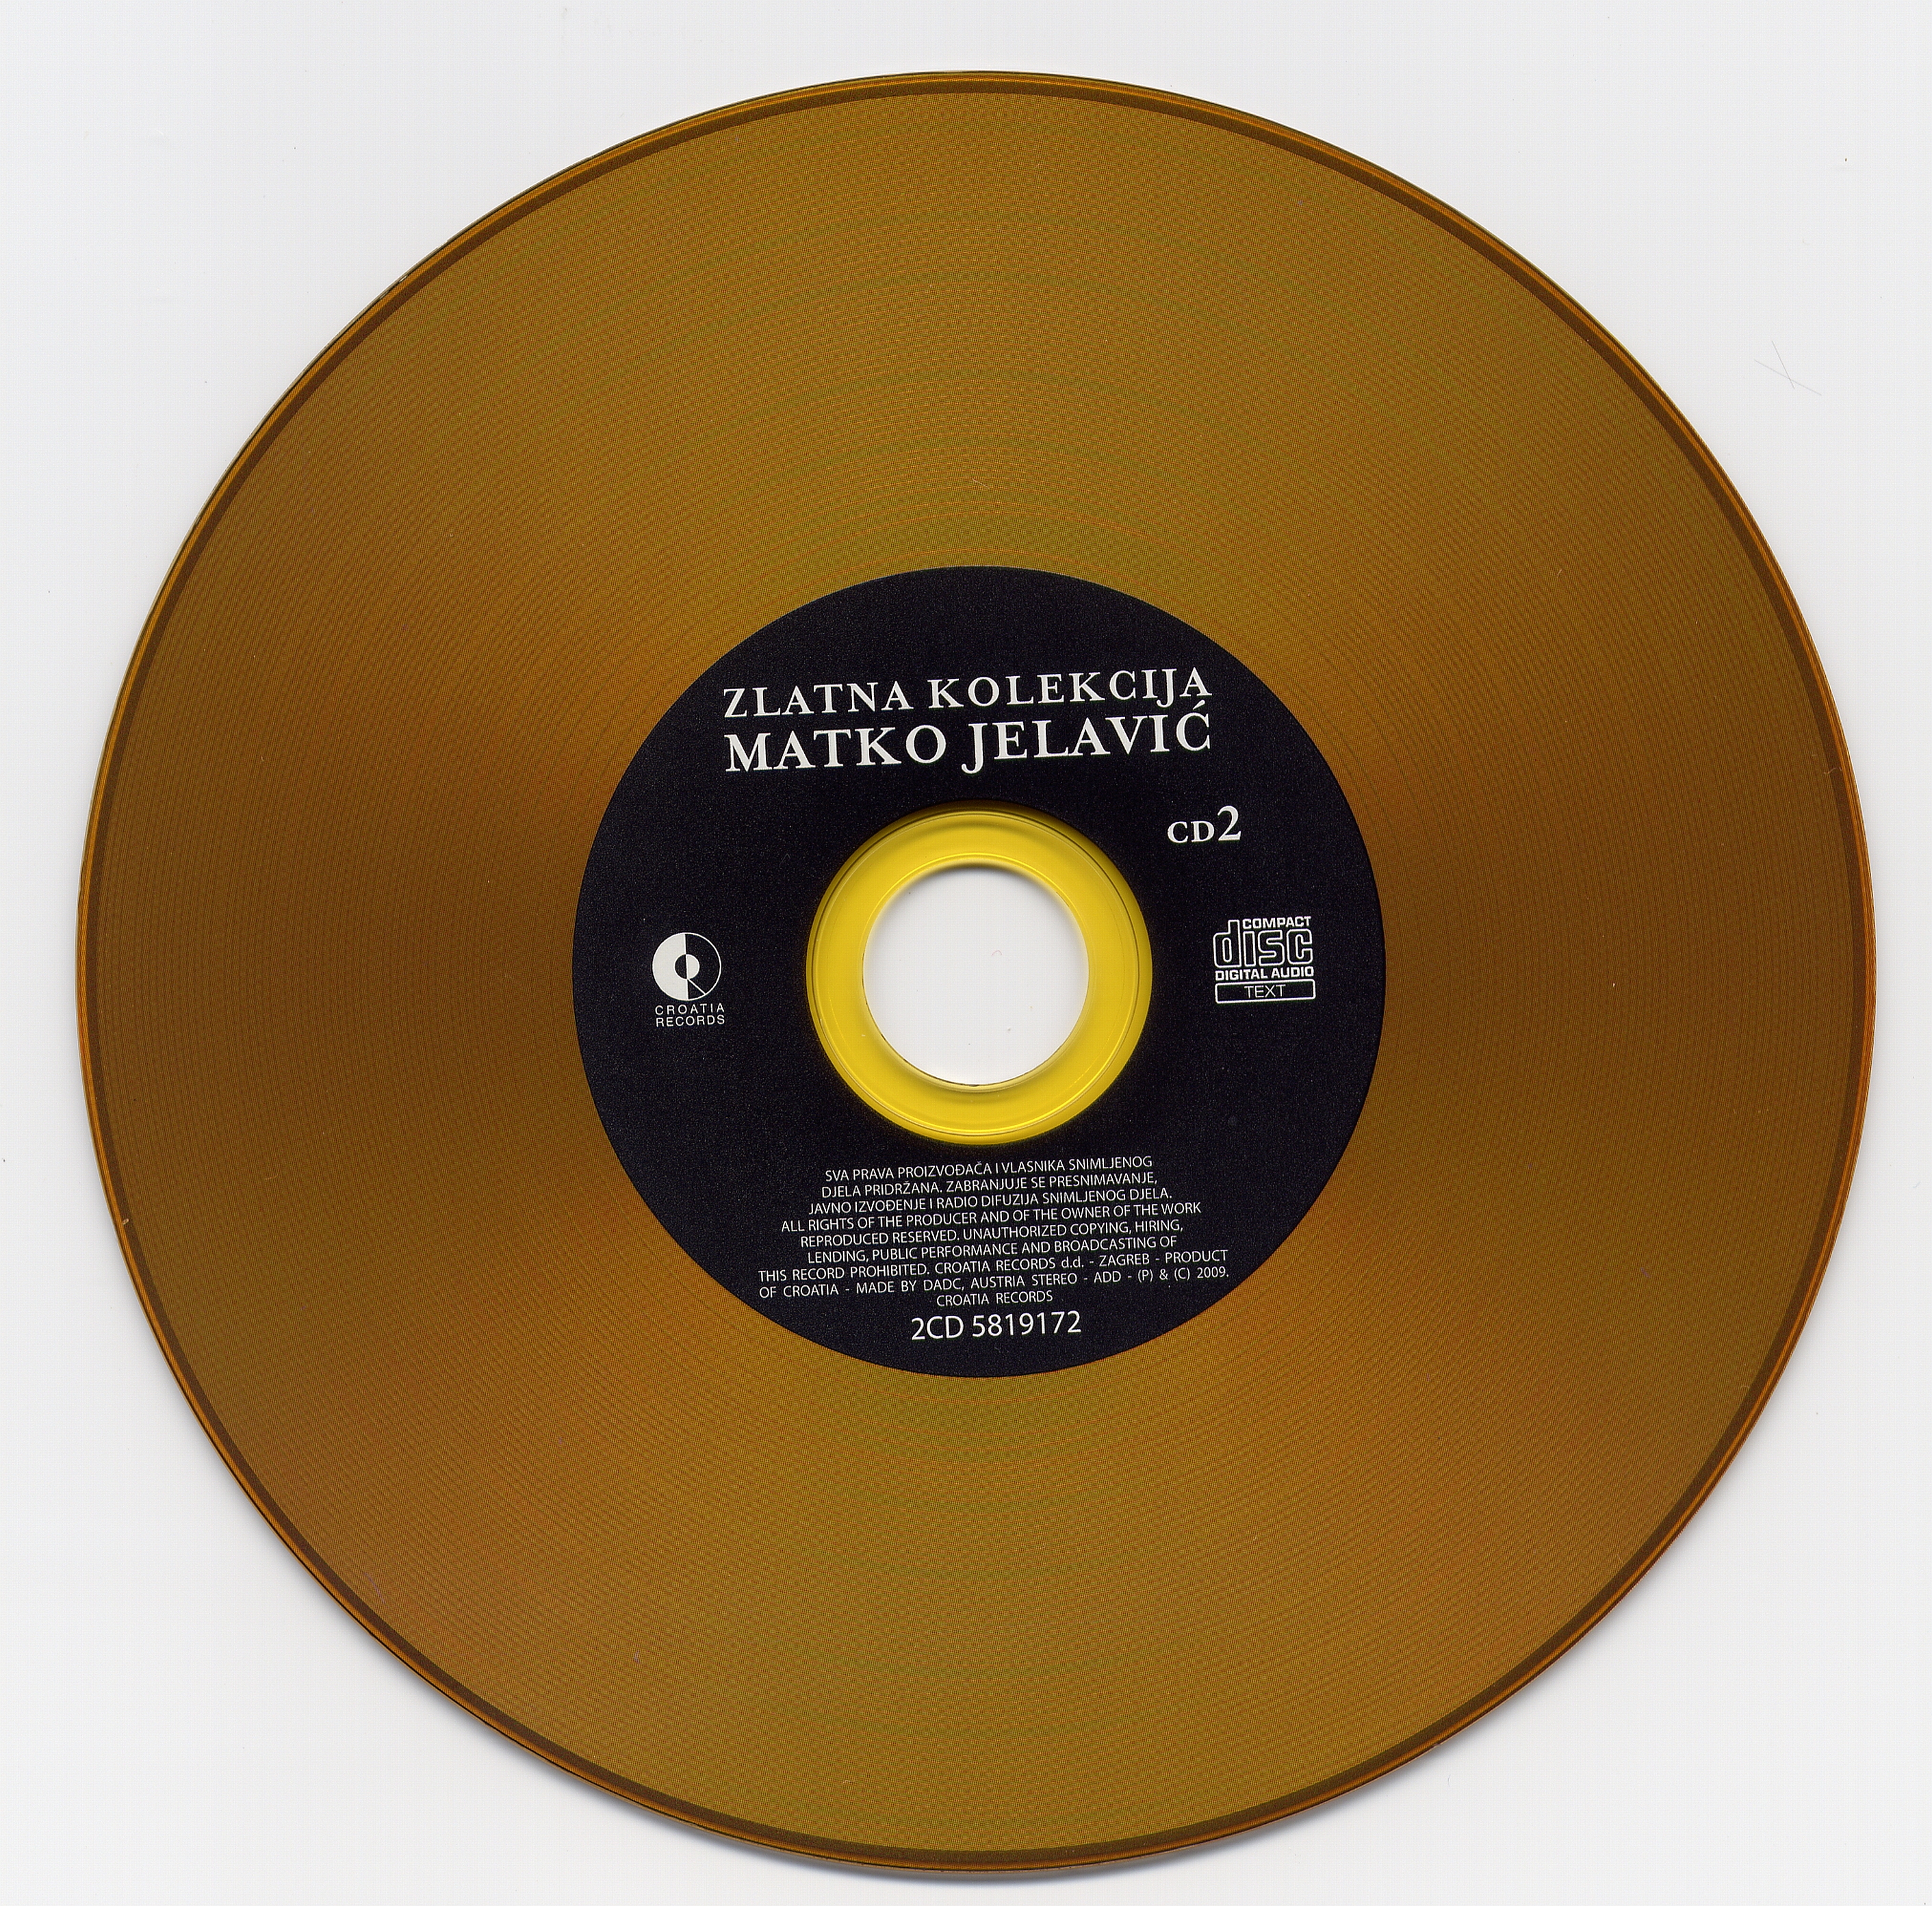 Matko Jelavic Zlatna kolekcija 2009 cd 2